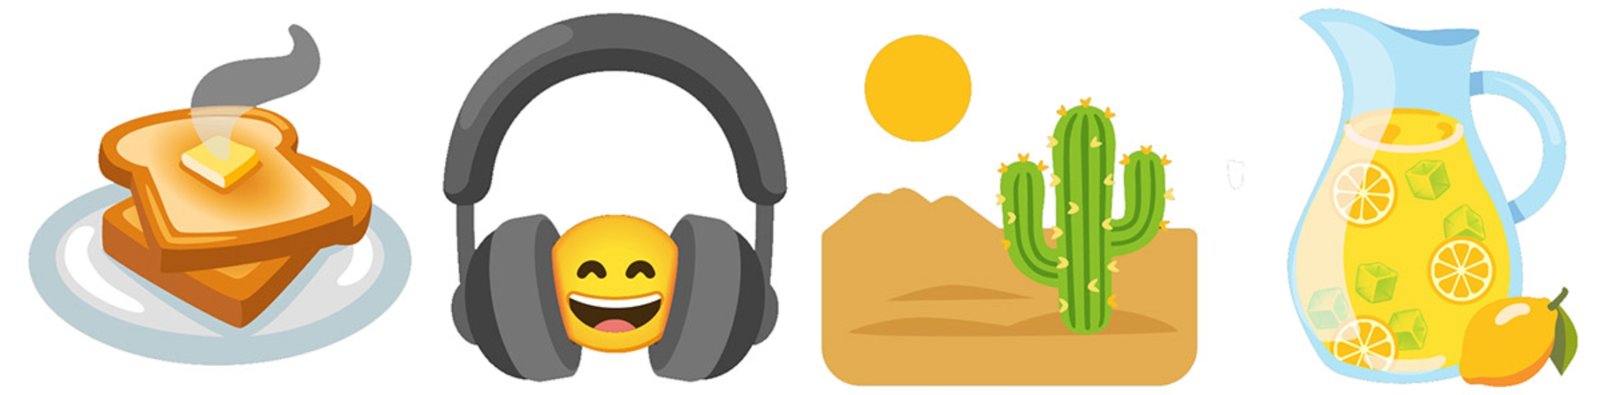 Gboard 11 combo emojis